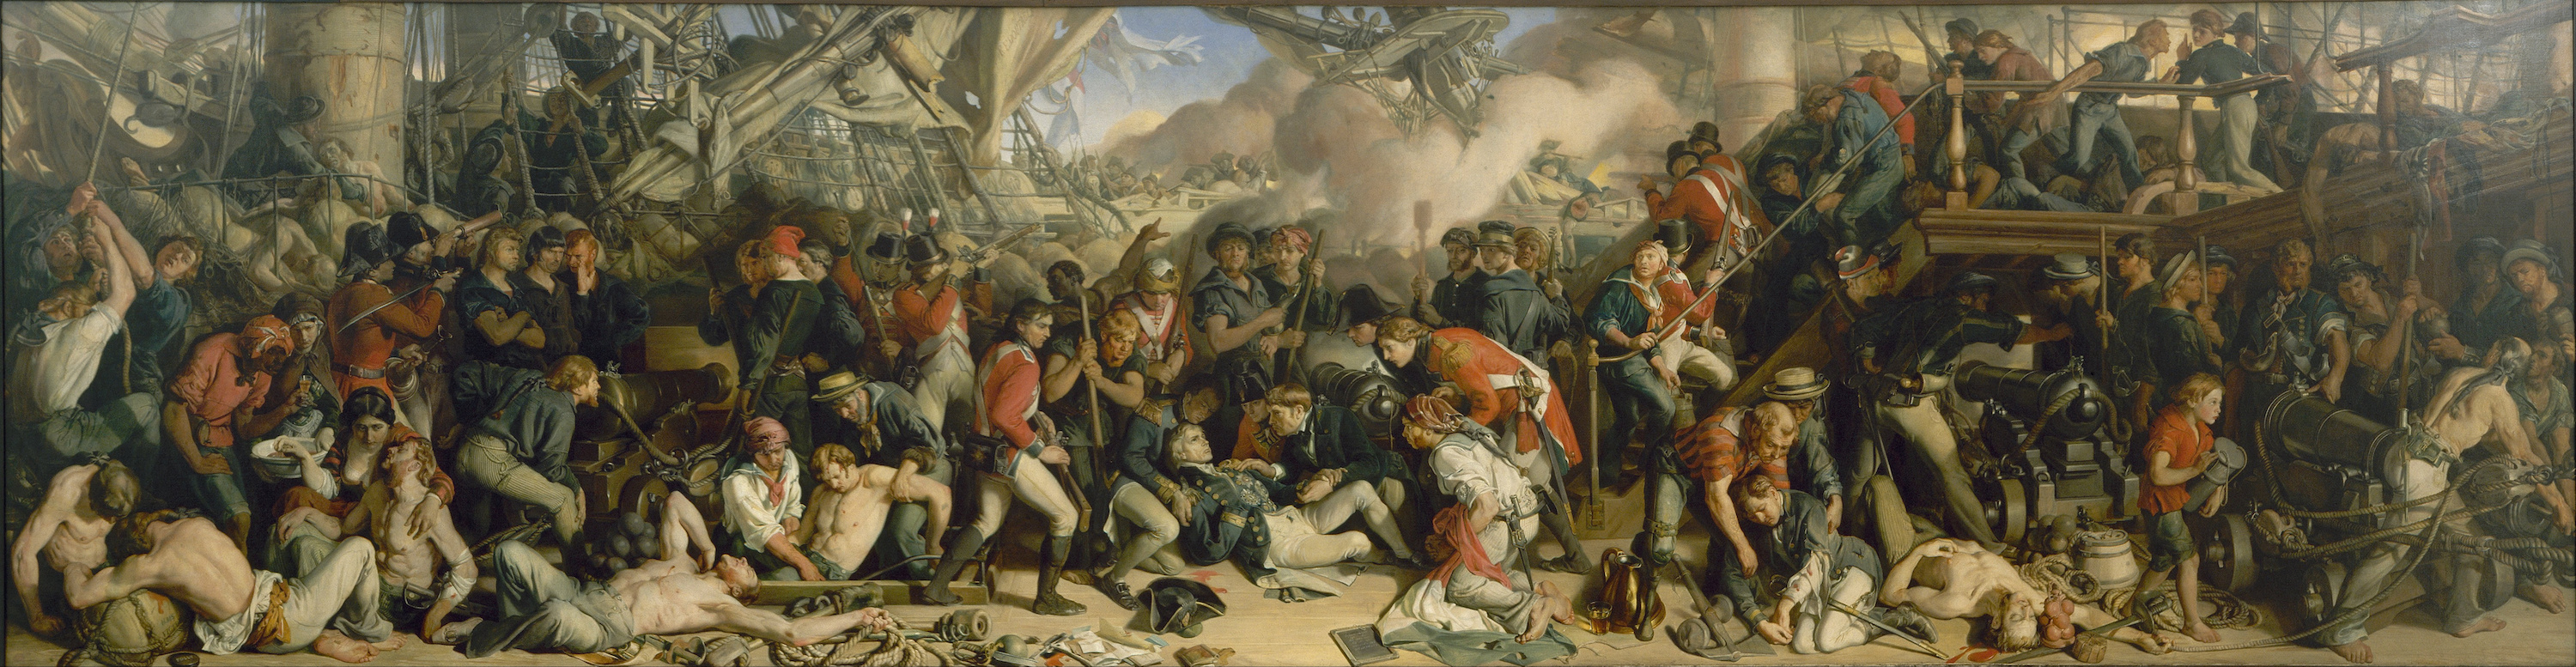 The Death of Nelson by Daniel Maclise - 1859–1861 - 98.5 x 353 cm Walker Art Gallery